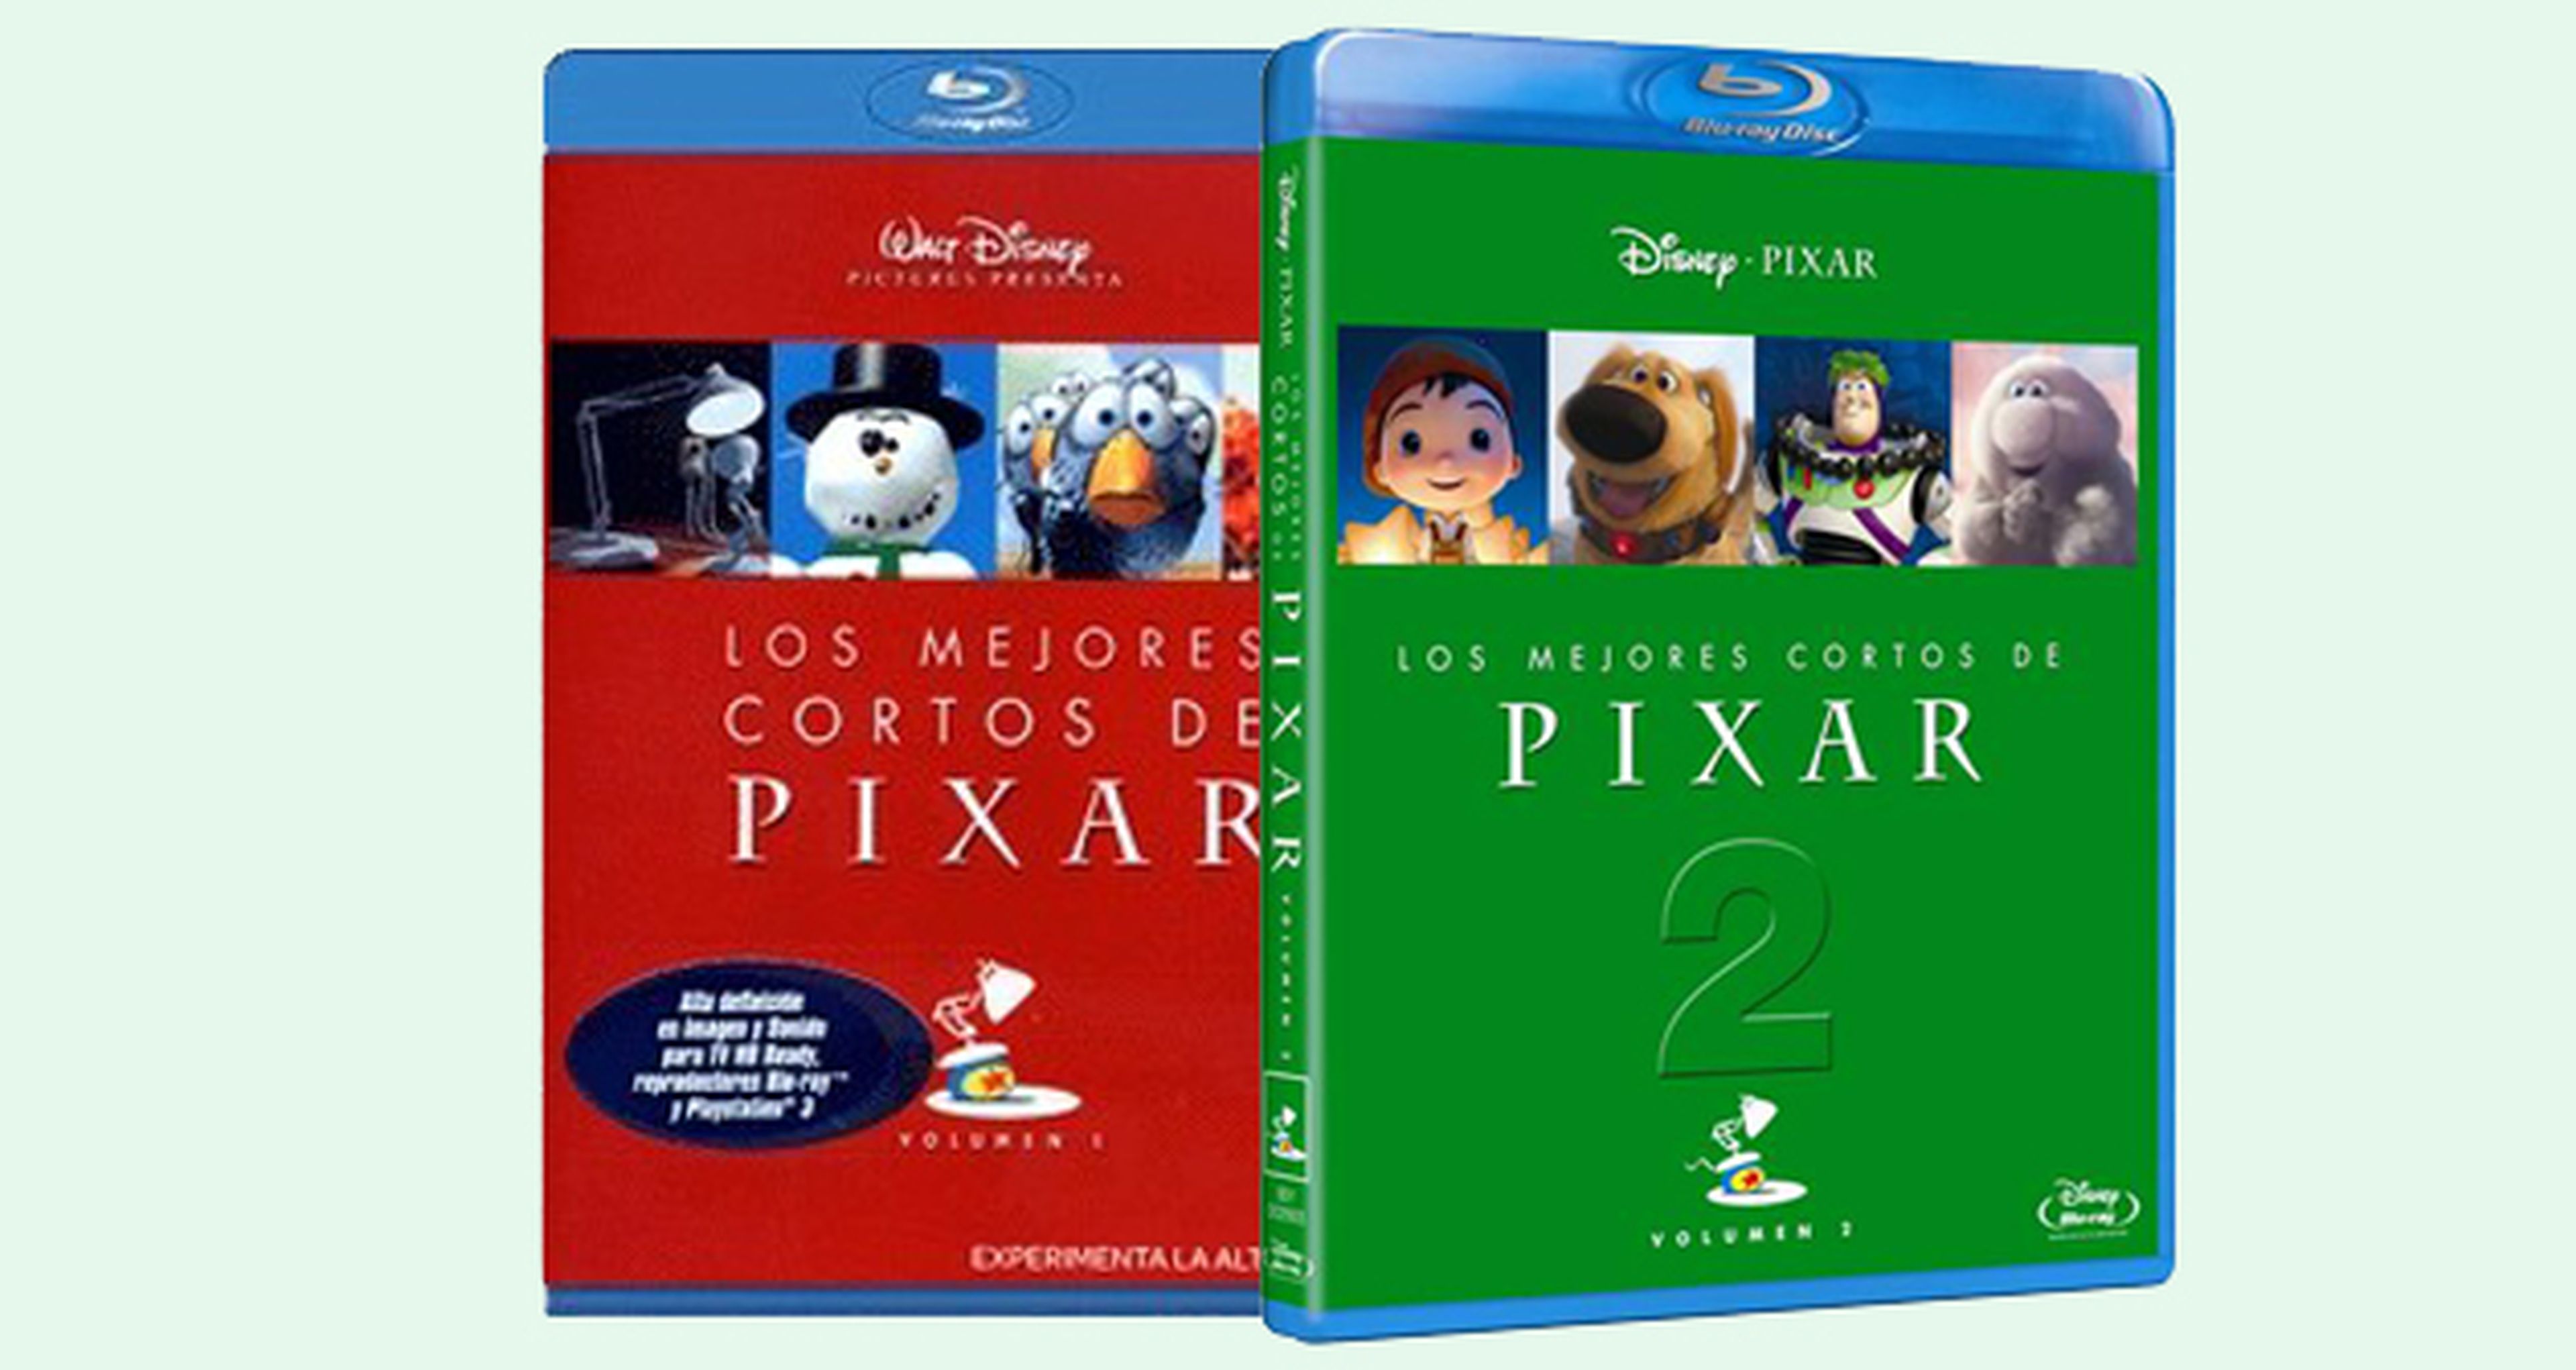 Los mejores cortos de Pixar 2, hoy a la venta